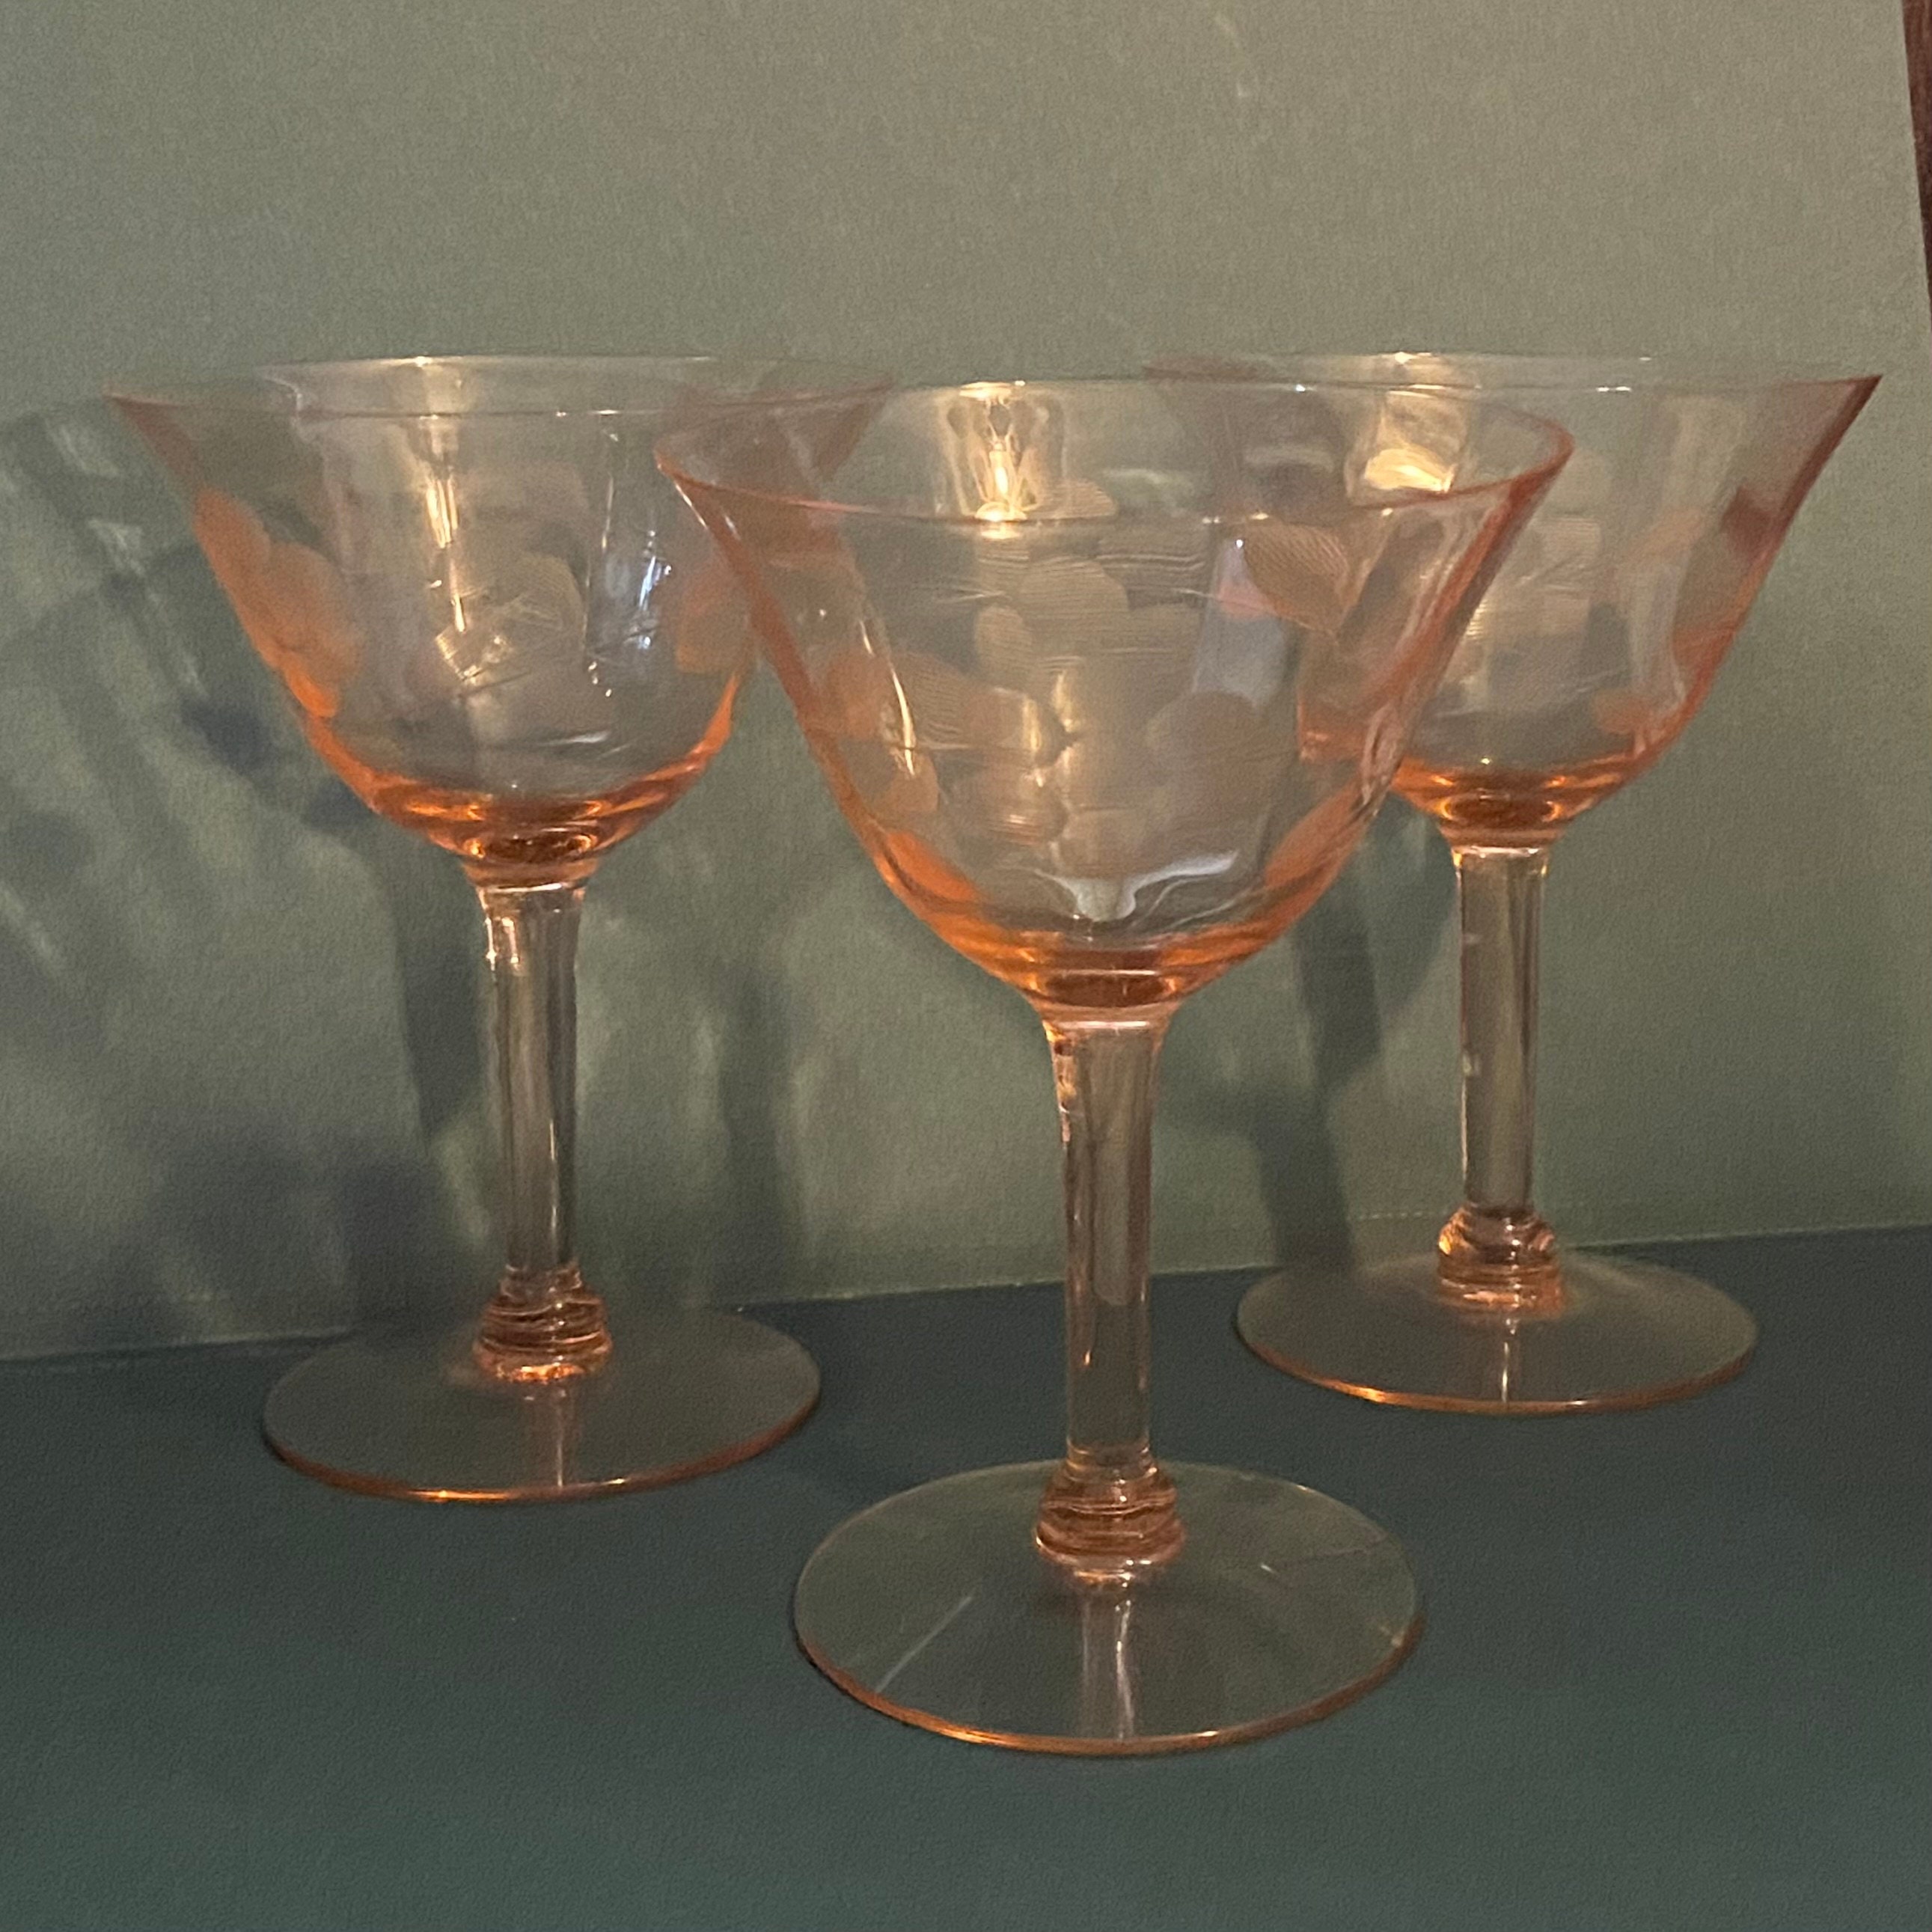 GOODS — Vintage Pink Stemmed Wine Glass